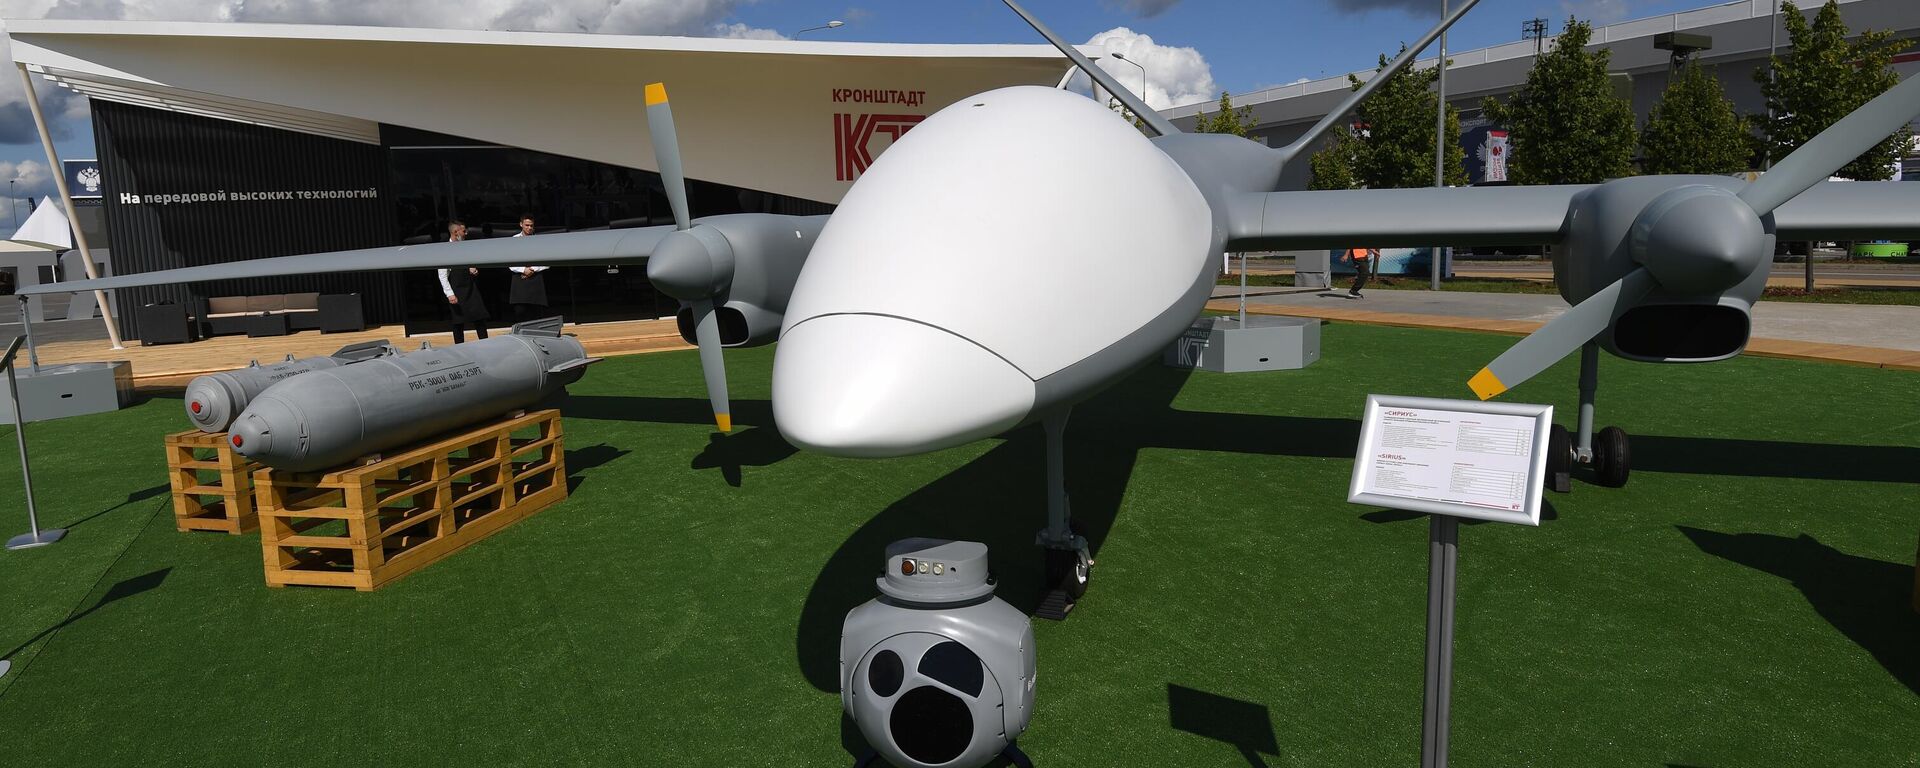 El dron de reconocimiento y ataque Inojodets-RU, conocido como Sirius, en el Foro Internacional ARMY-2021 - Sputnik Mundo, 1920, 12.11.2021